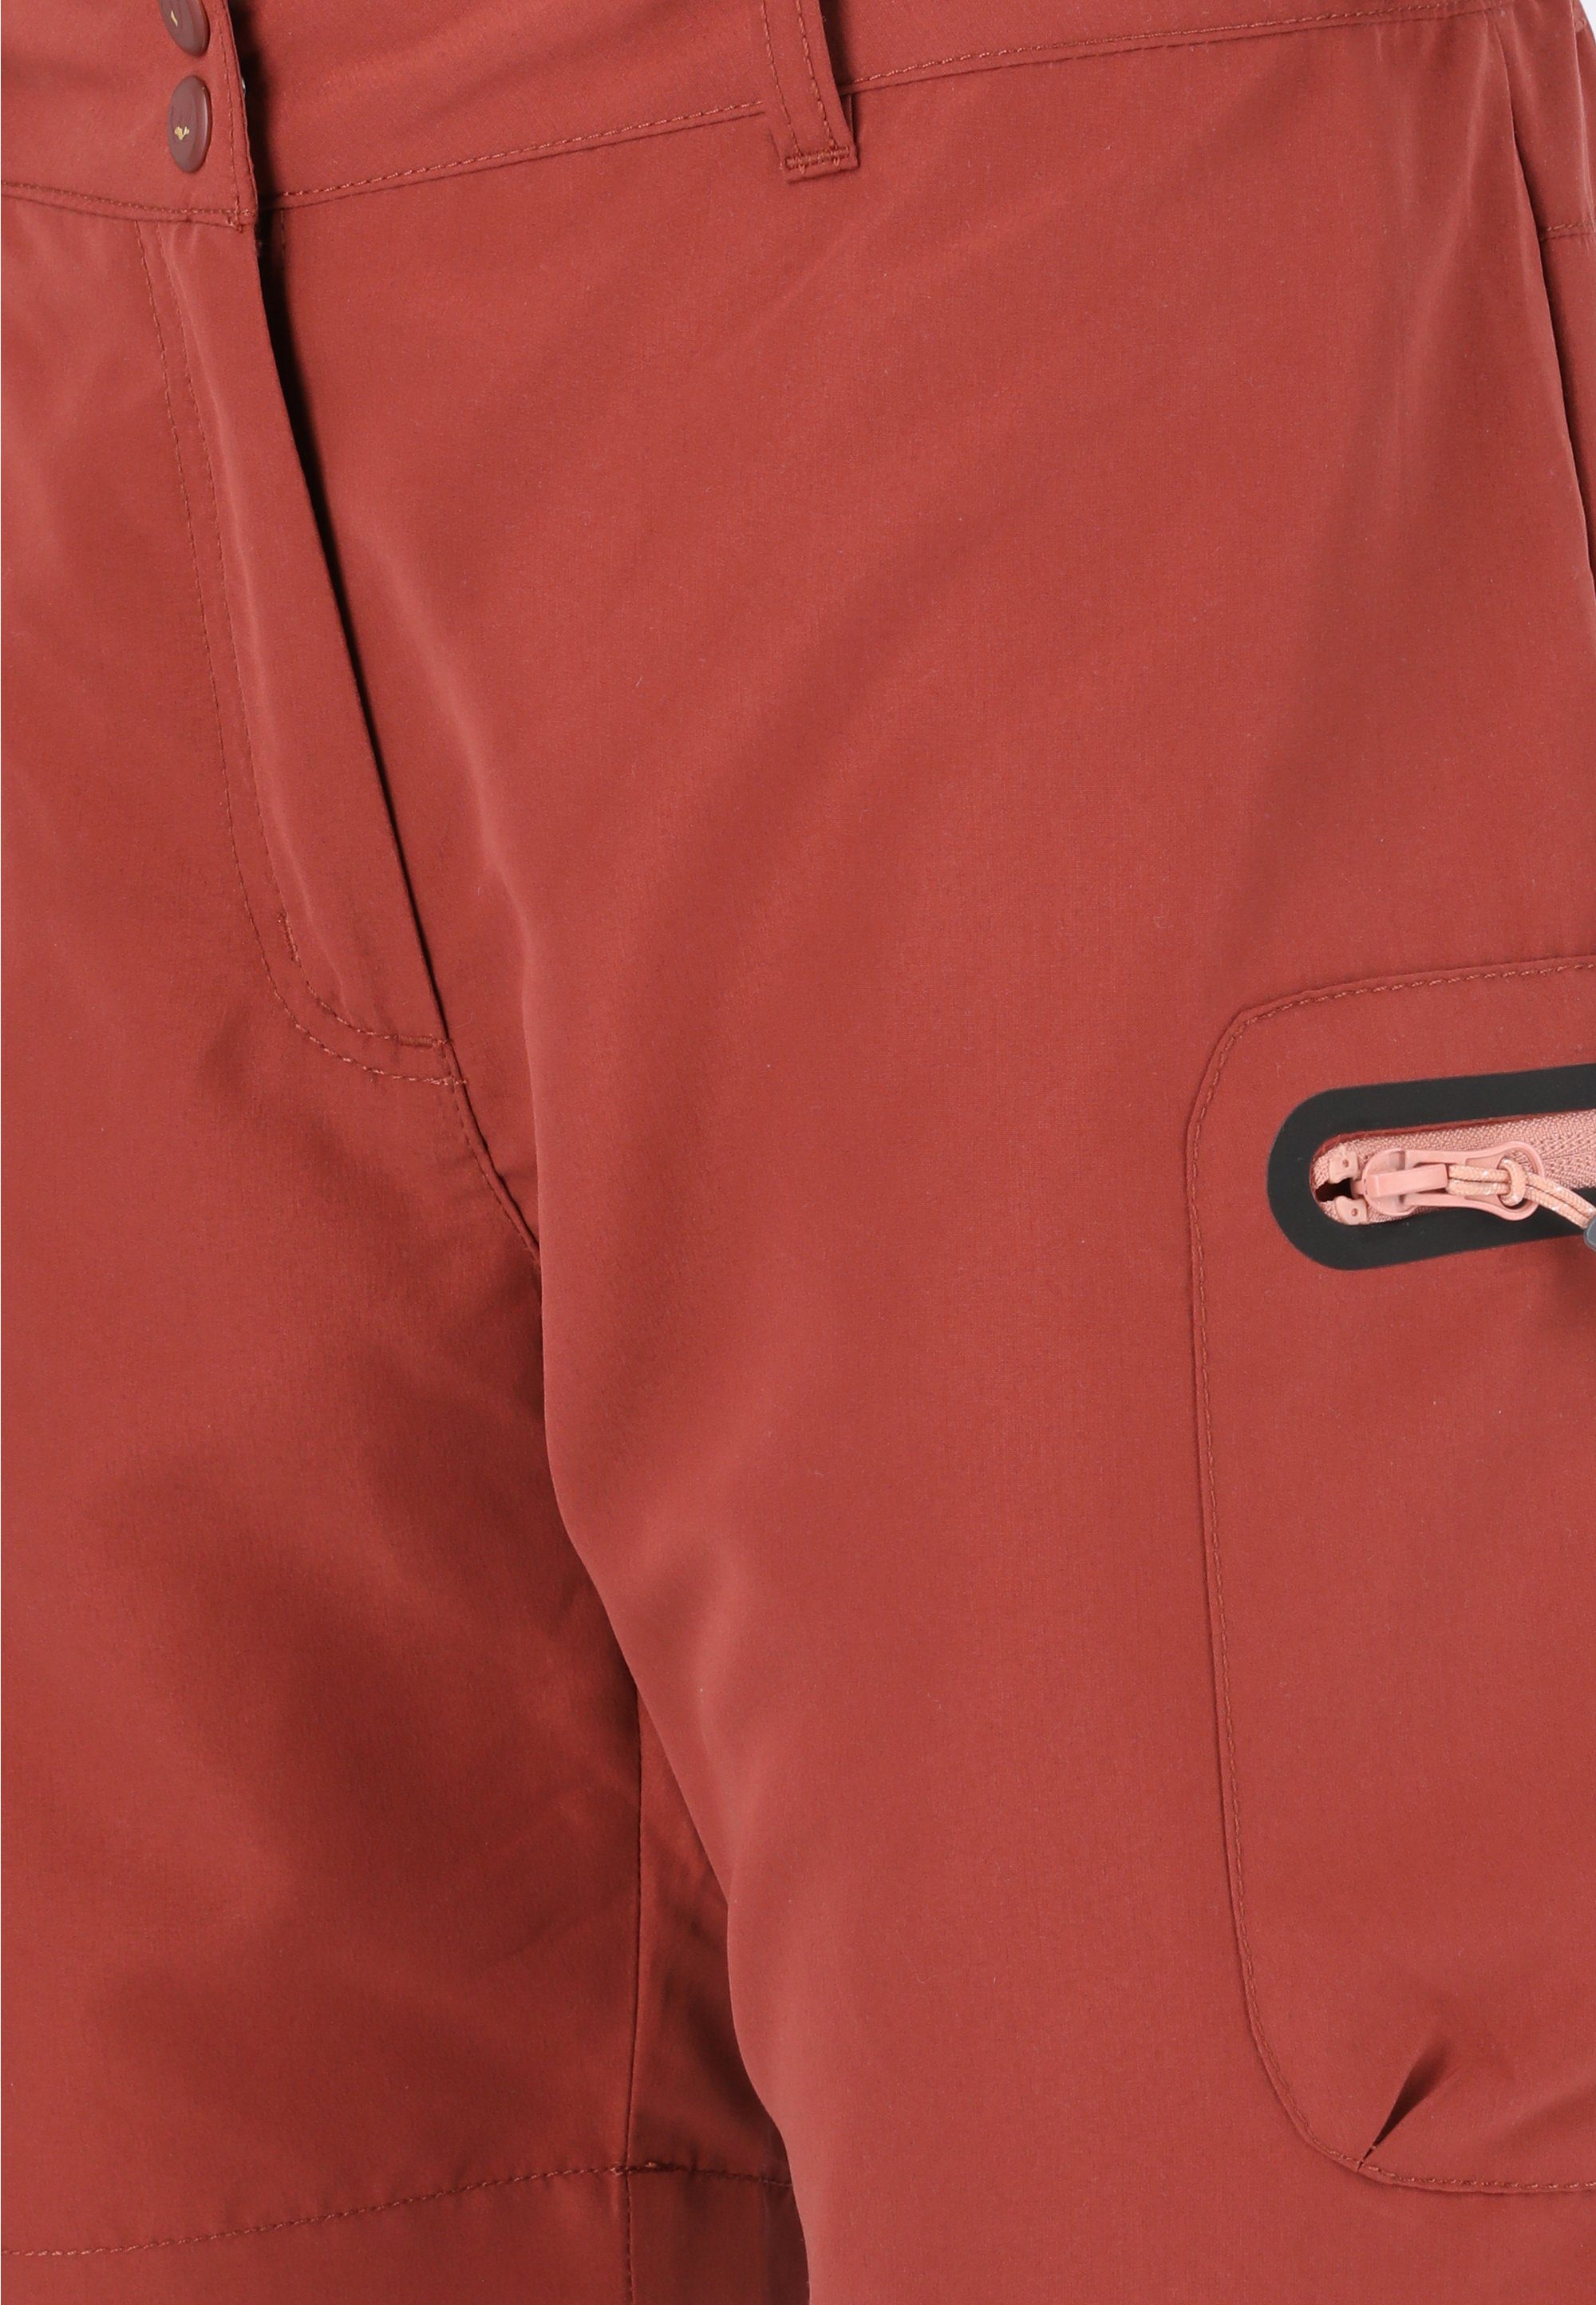 WHISTLER Shorts Stian mit praktischen maroon Reißverschlusstaschen